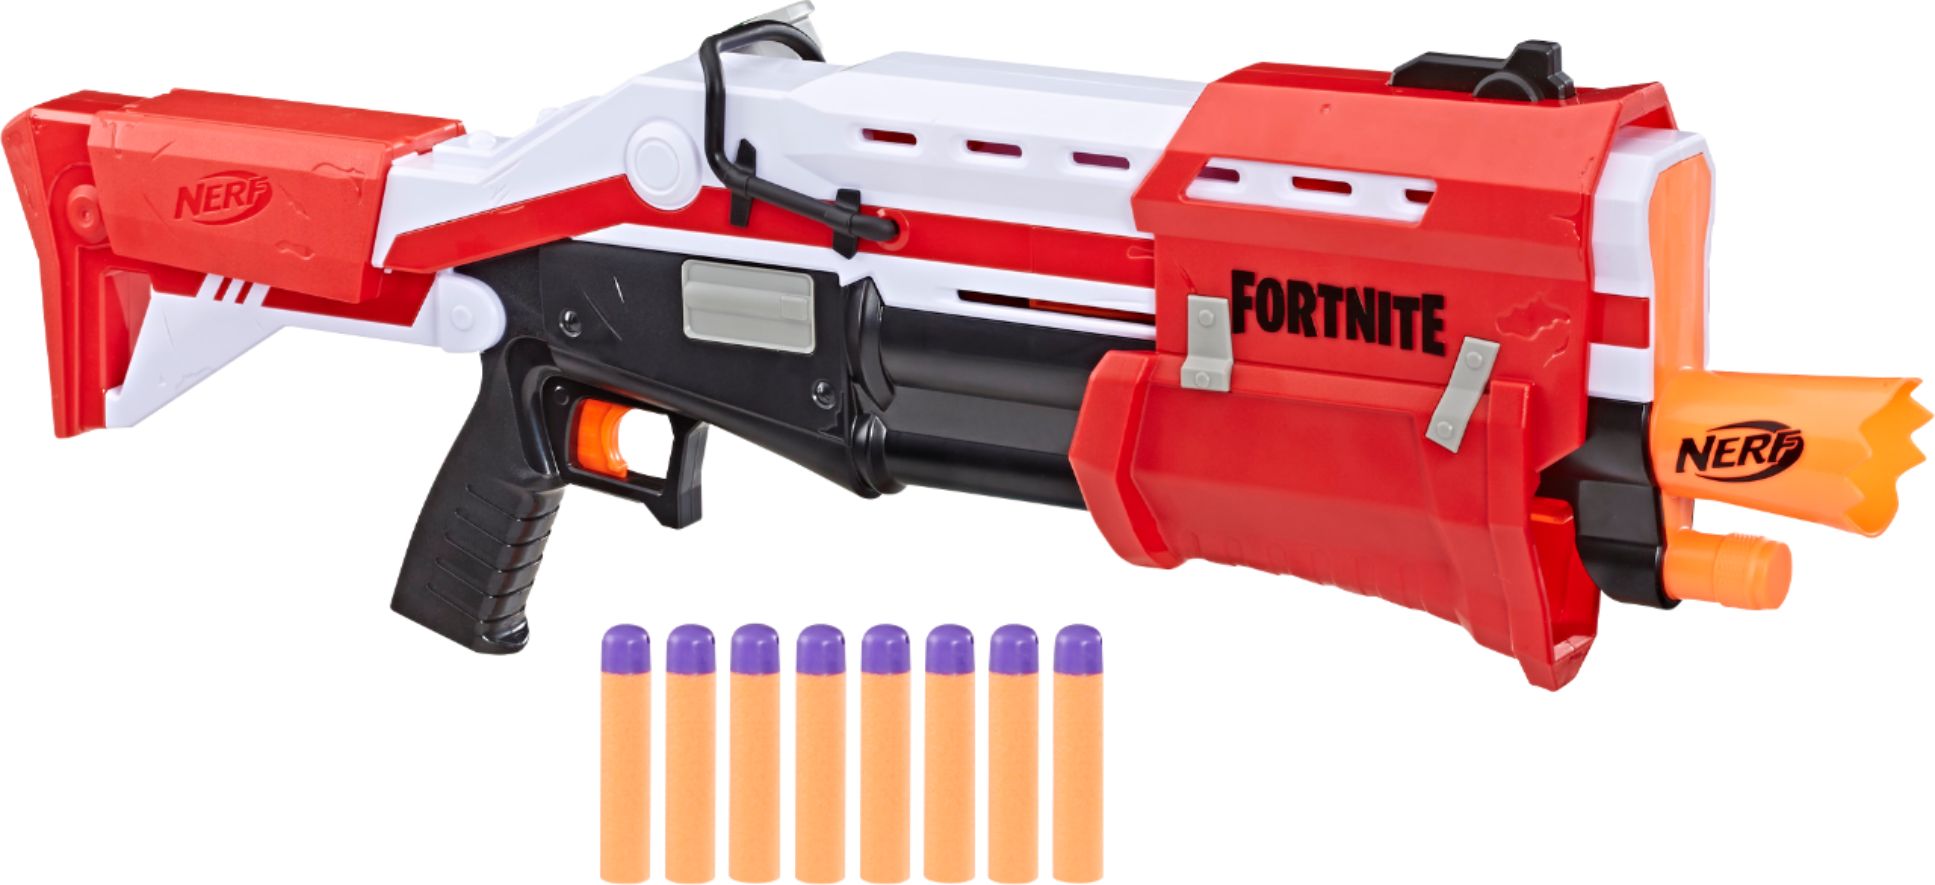 Nerf Fortnite Ts Blaster Best Buy Nerf Fortnite Ts Blaster E6159